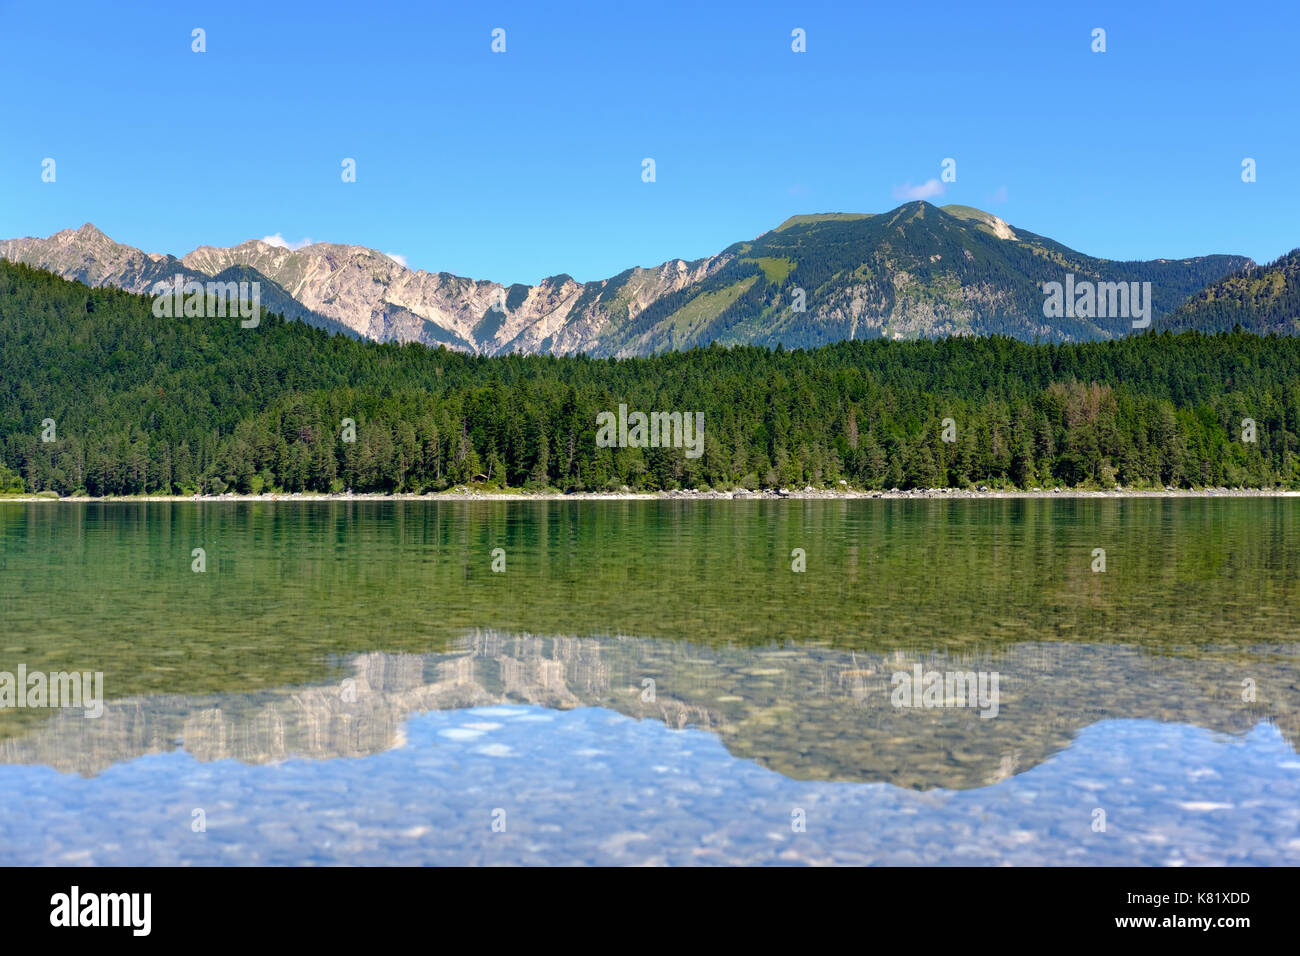 Eibsee lake and Ammergauer Alps with Schellschlicht, Kreuzeck and Scharfeck, near Grainau, Werdenfelser Land, Upper Bavaria Stock Photo